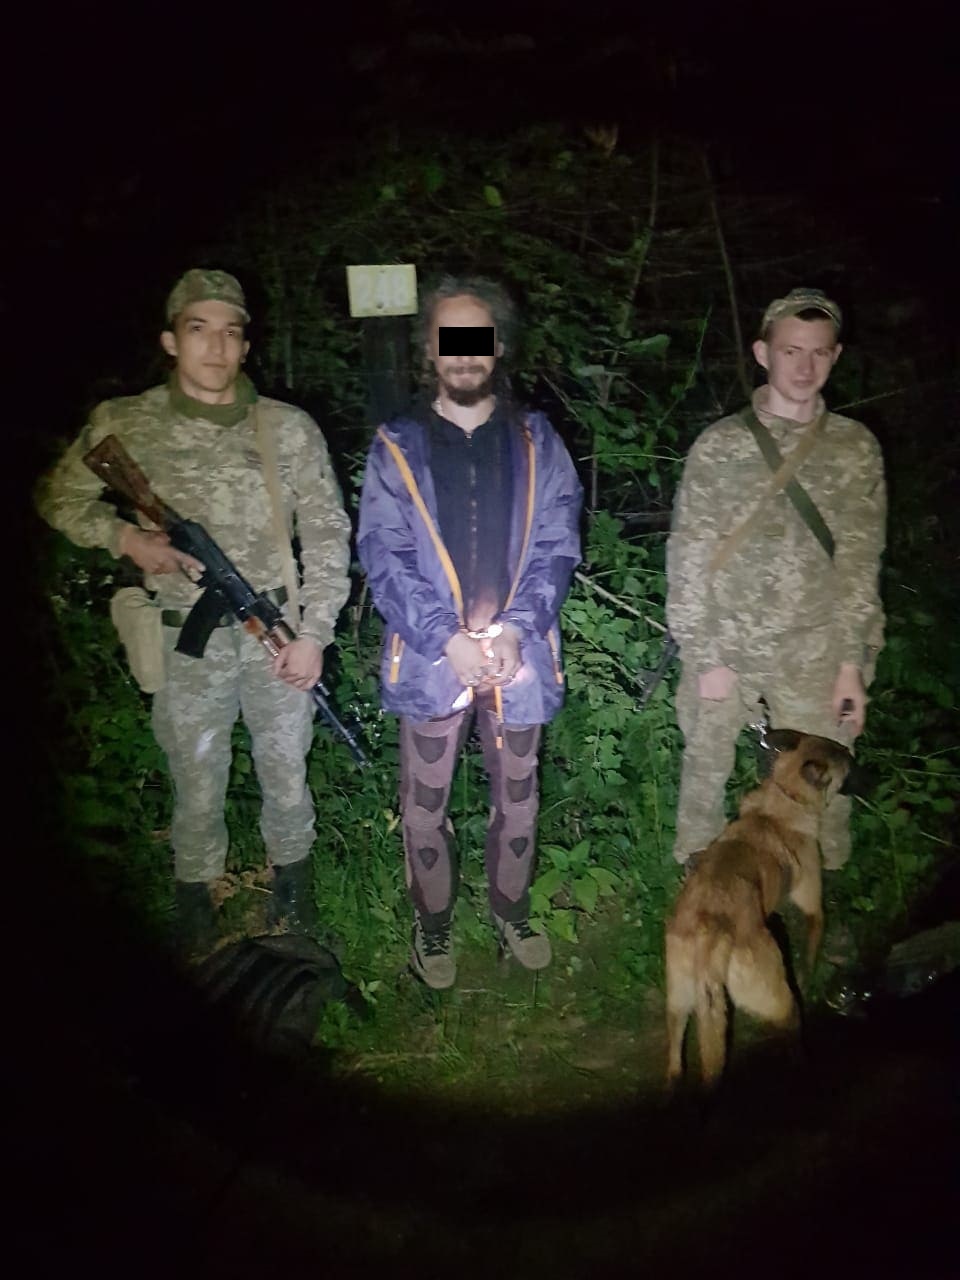 Поблизу кордону в лісі на Закарпатті затримали румуна, що намагався дістатися Німеччини (ФОТО)